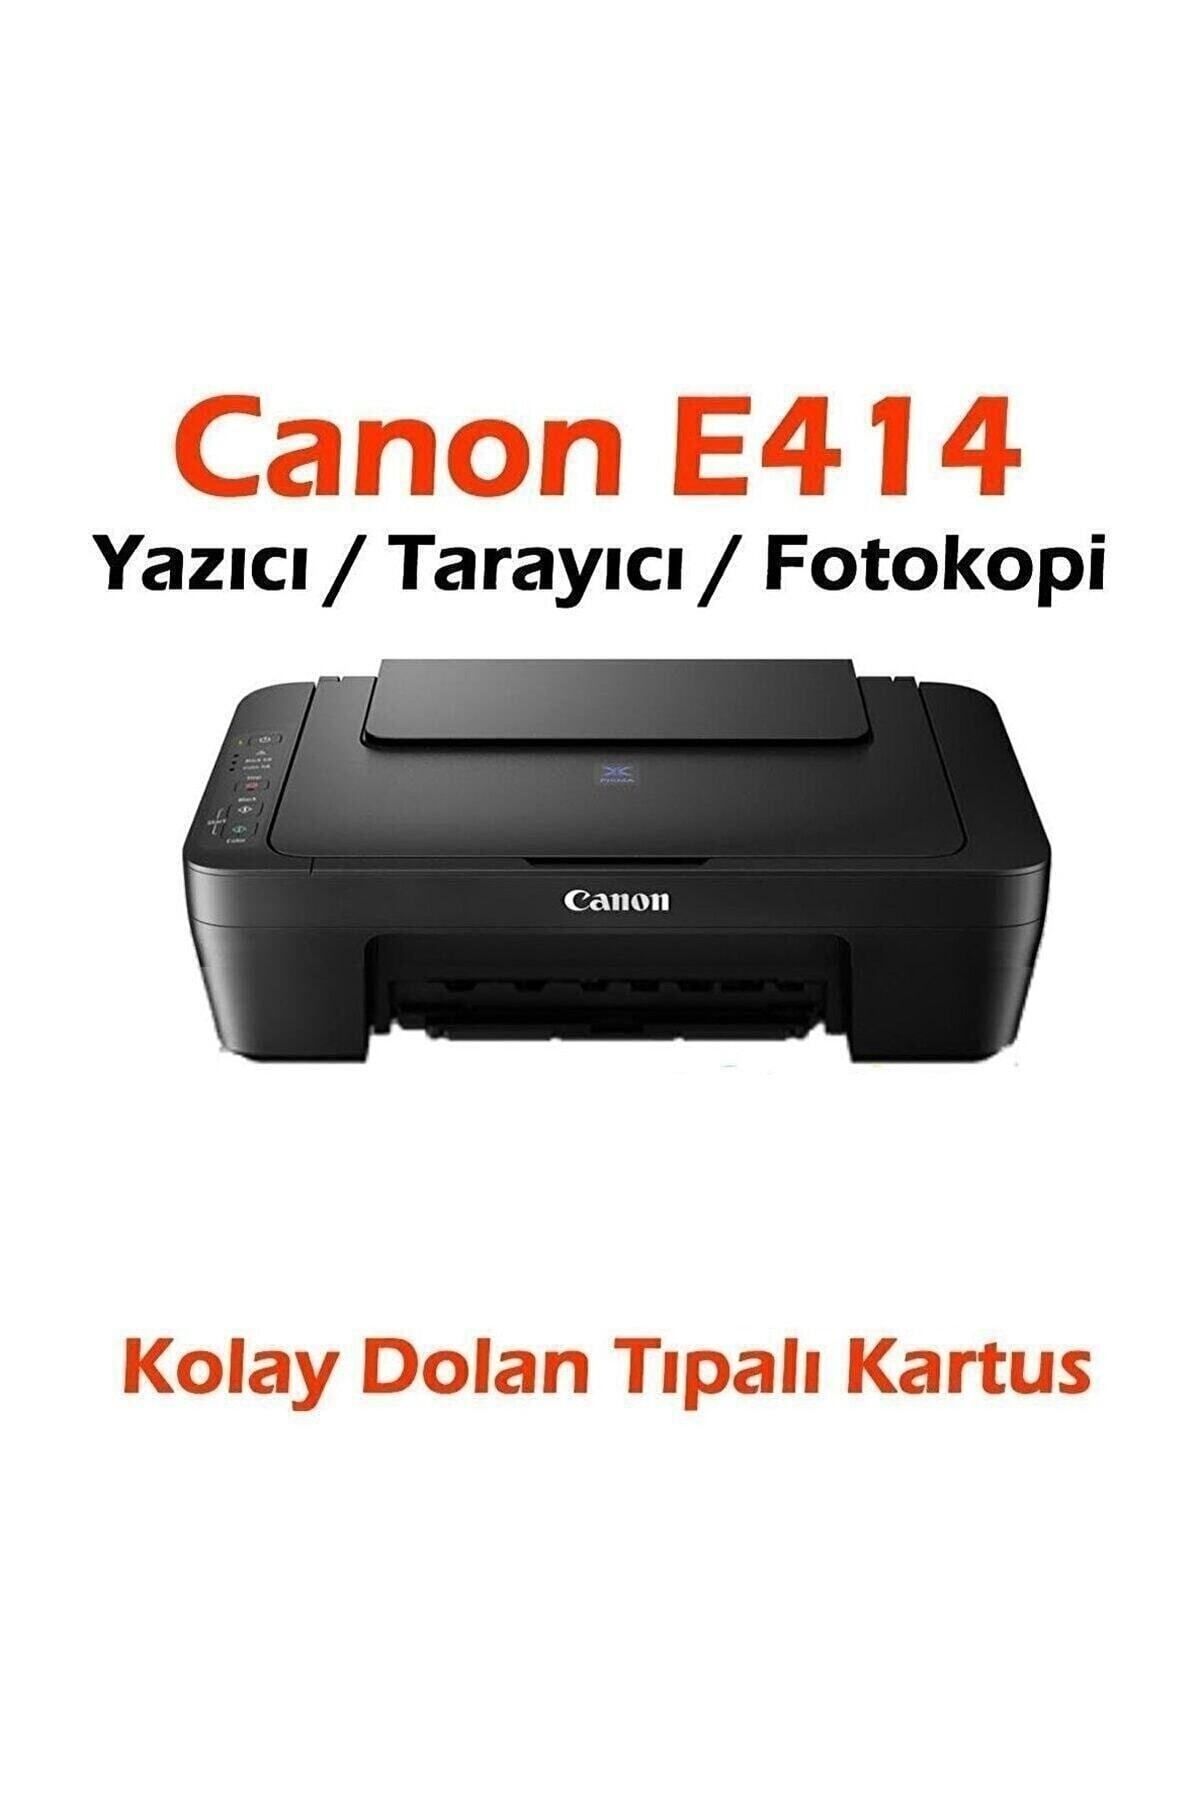 Canon Dolan Kartuşlu E414 Yazıcı / Tarayıcı / Fotokopi